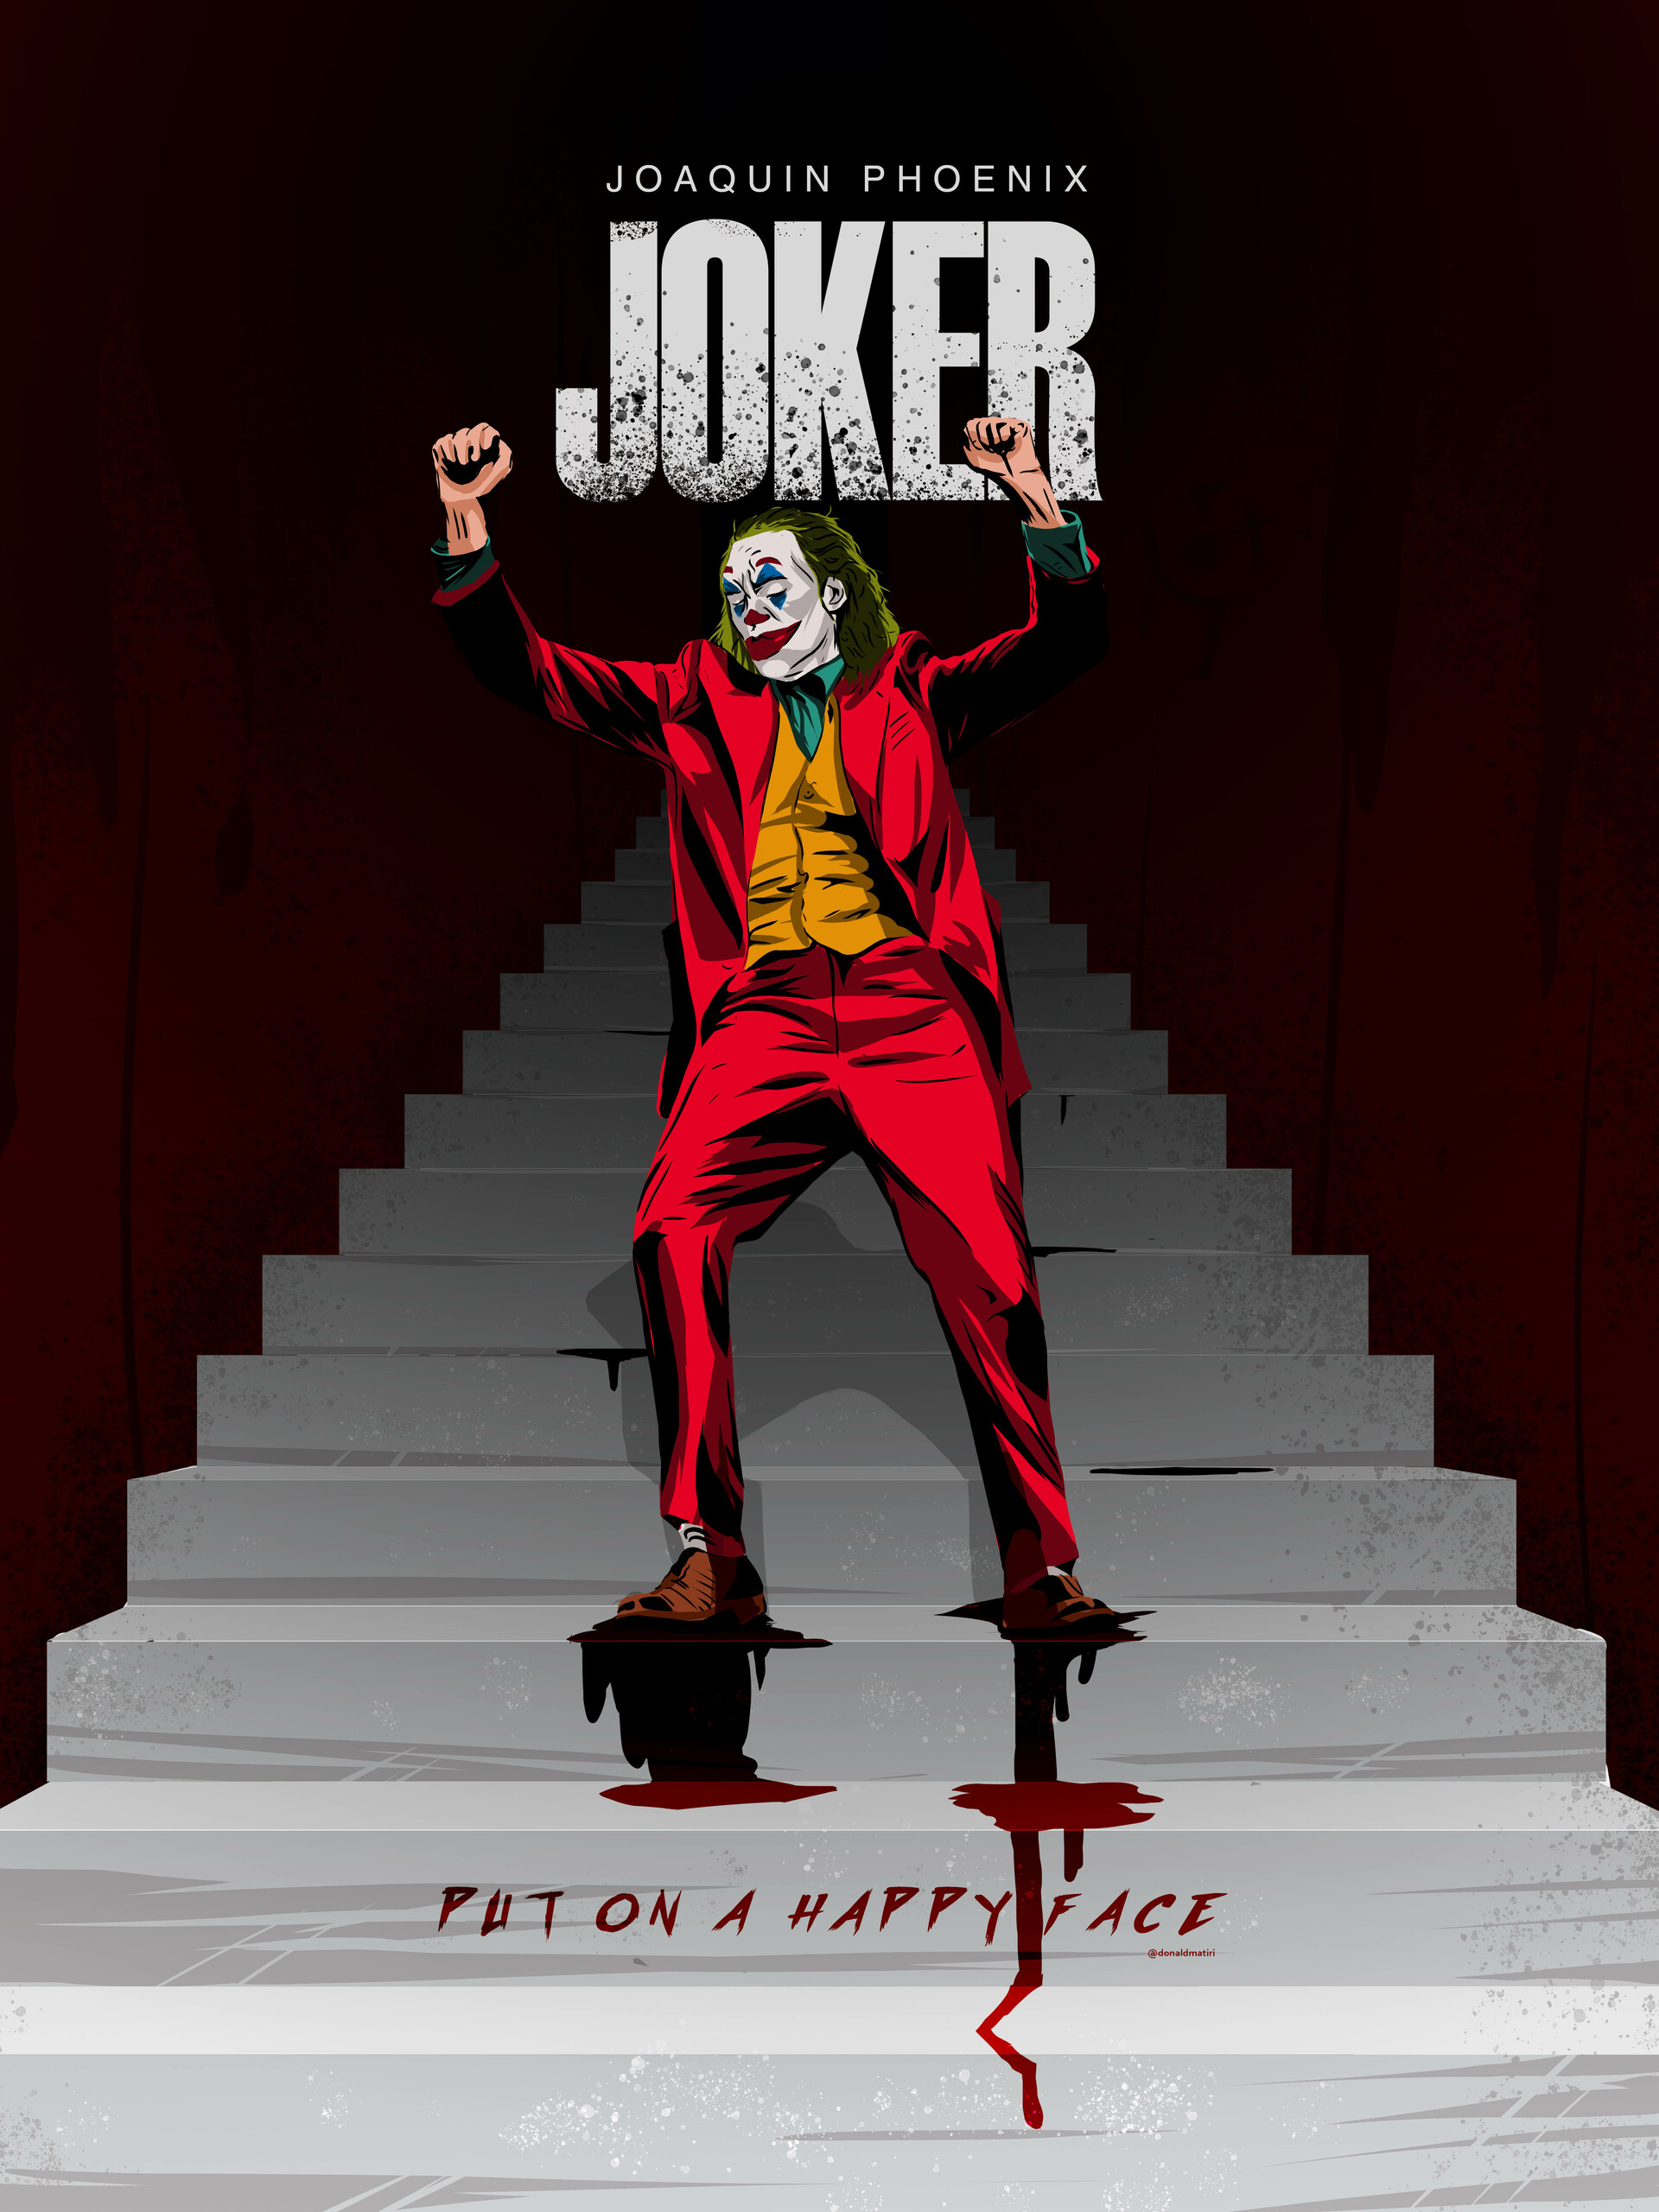 ArtStation - Joker poster